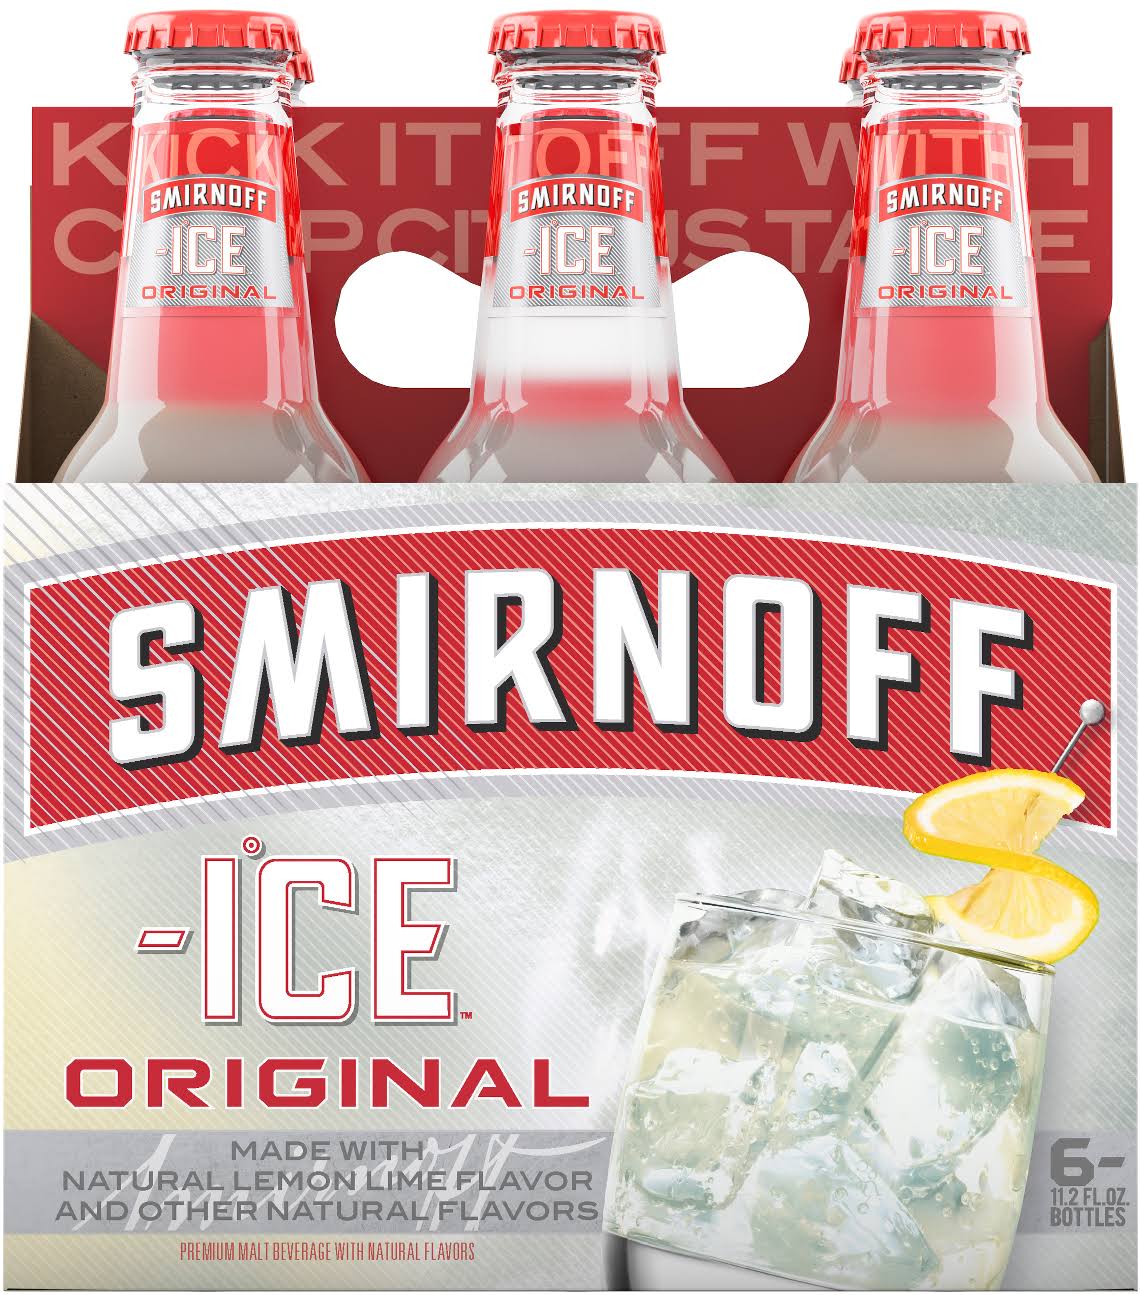 Smirnoff Ice Flavored Malt Beverage